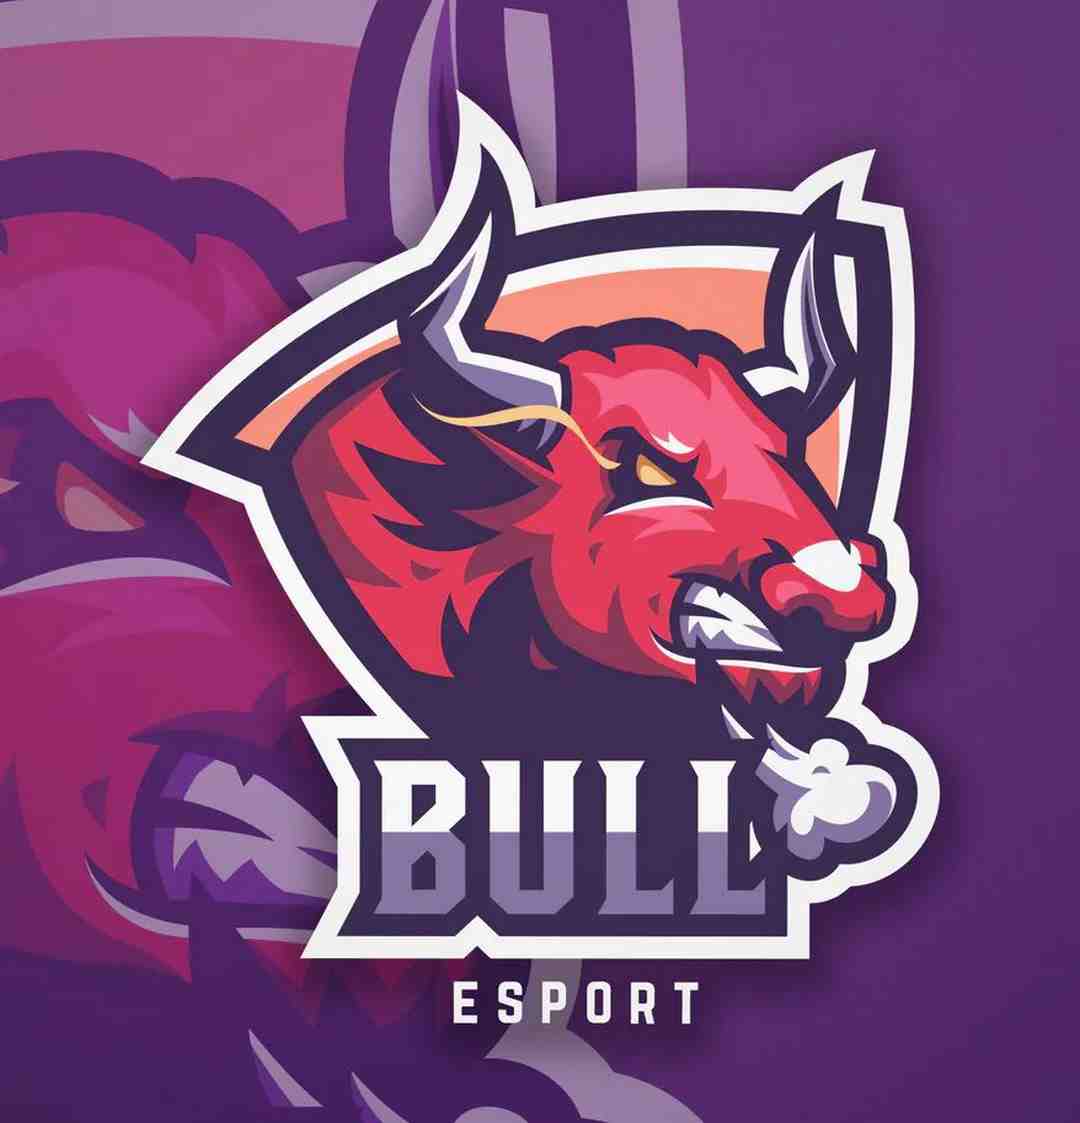 Trò chơi mang màu sắc rực lửa từ Esports Bull